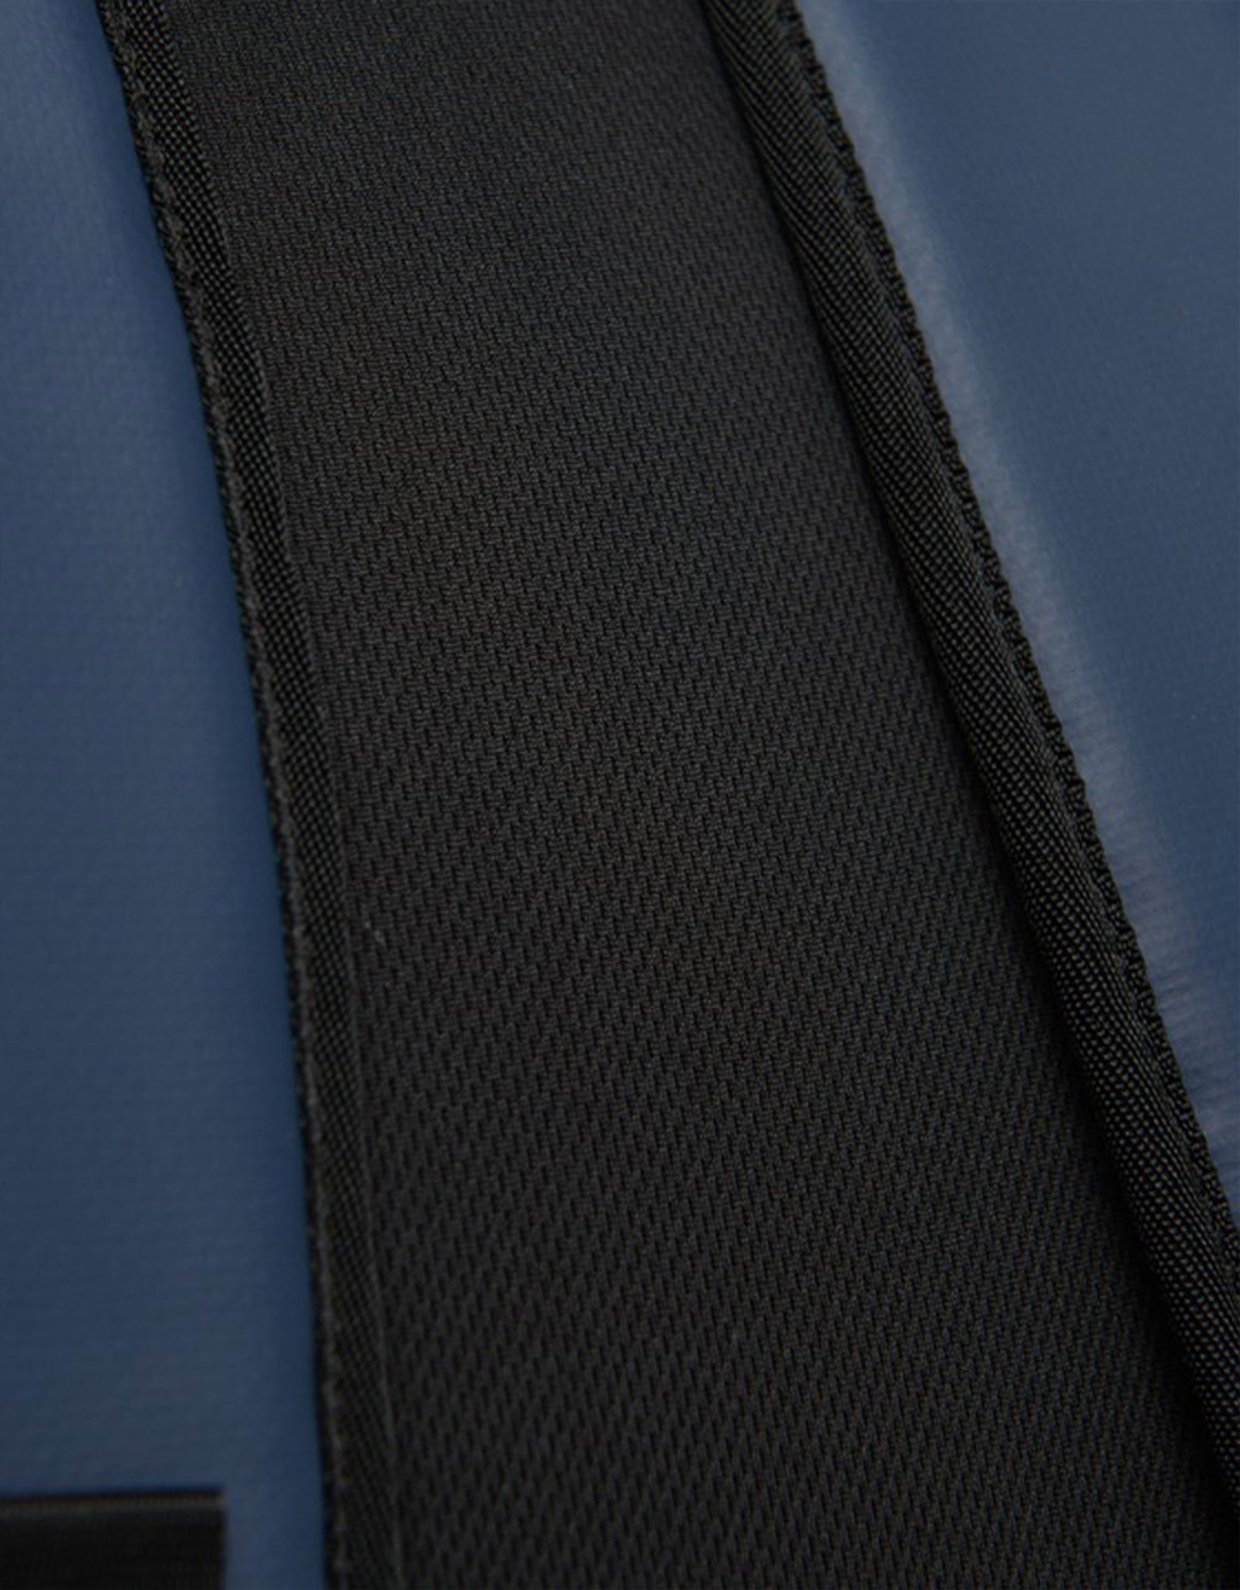 Superdry Code tarp backpack dark navy